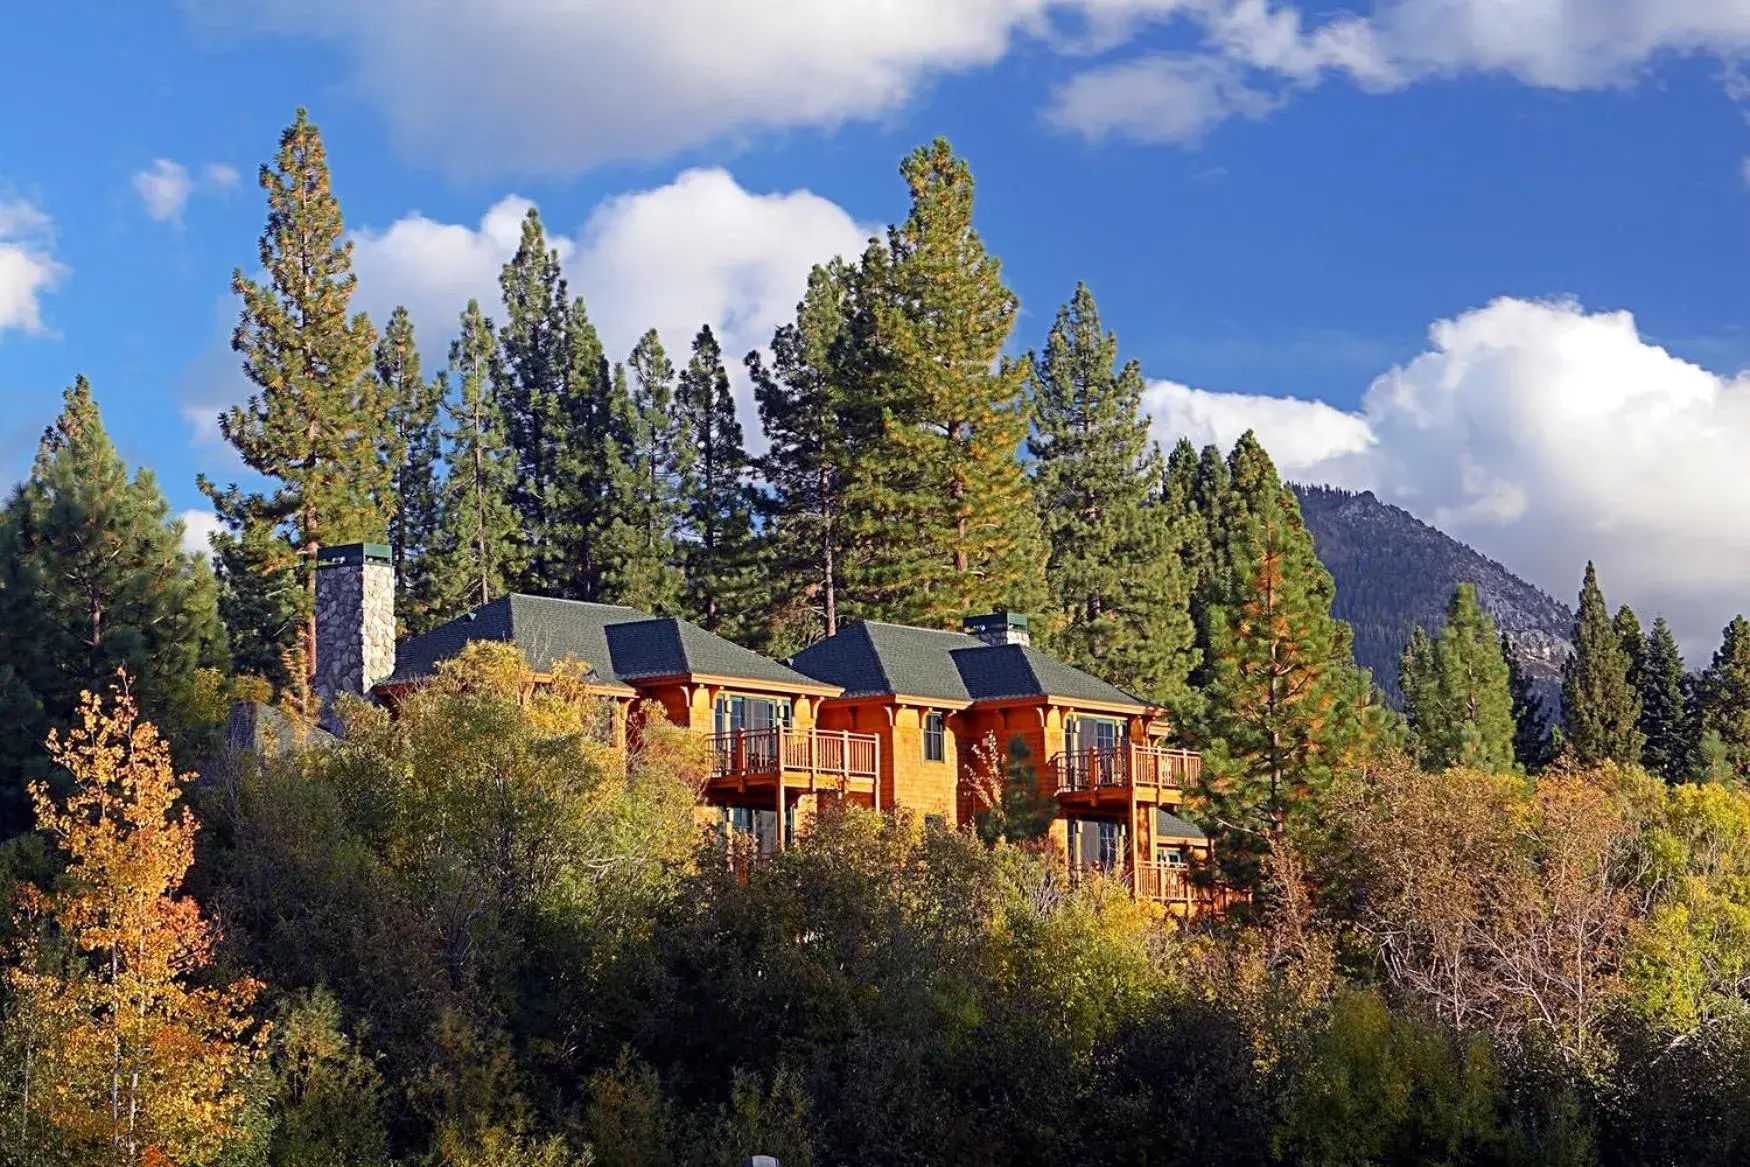 Property Building in Hyatt Residence Club Lake Tahoe, High Sierra Lodge